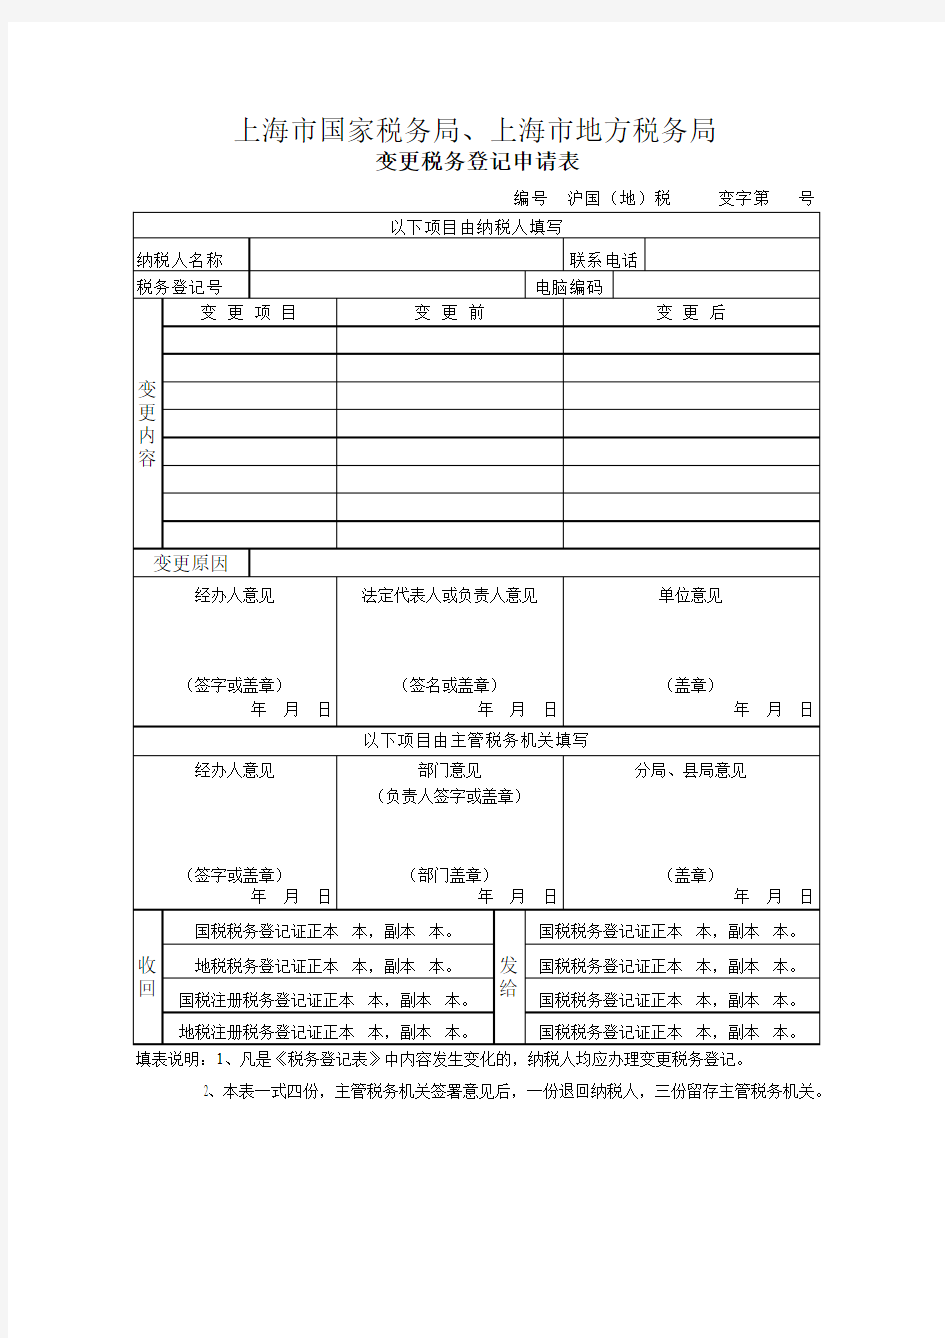 上海市国家税务局、上海市地方税务局变更税务登记申请表